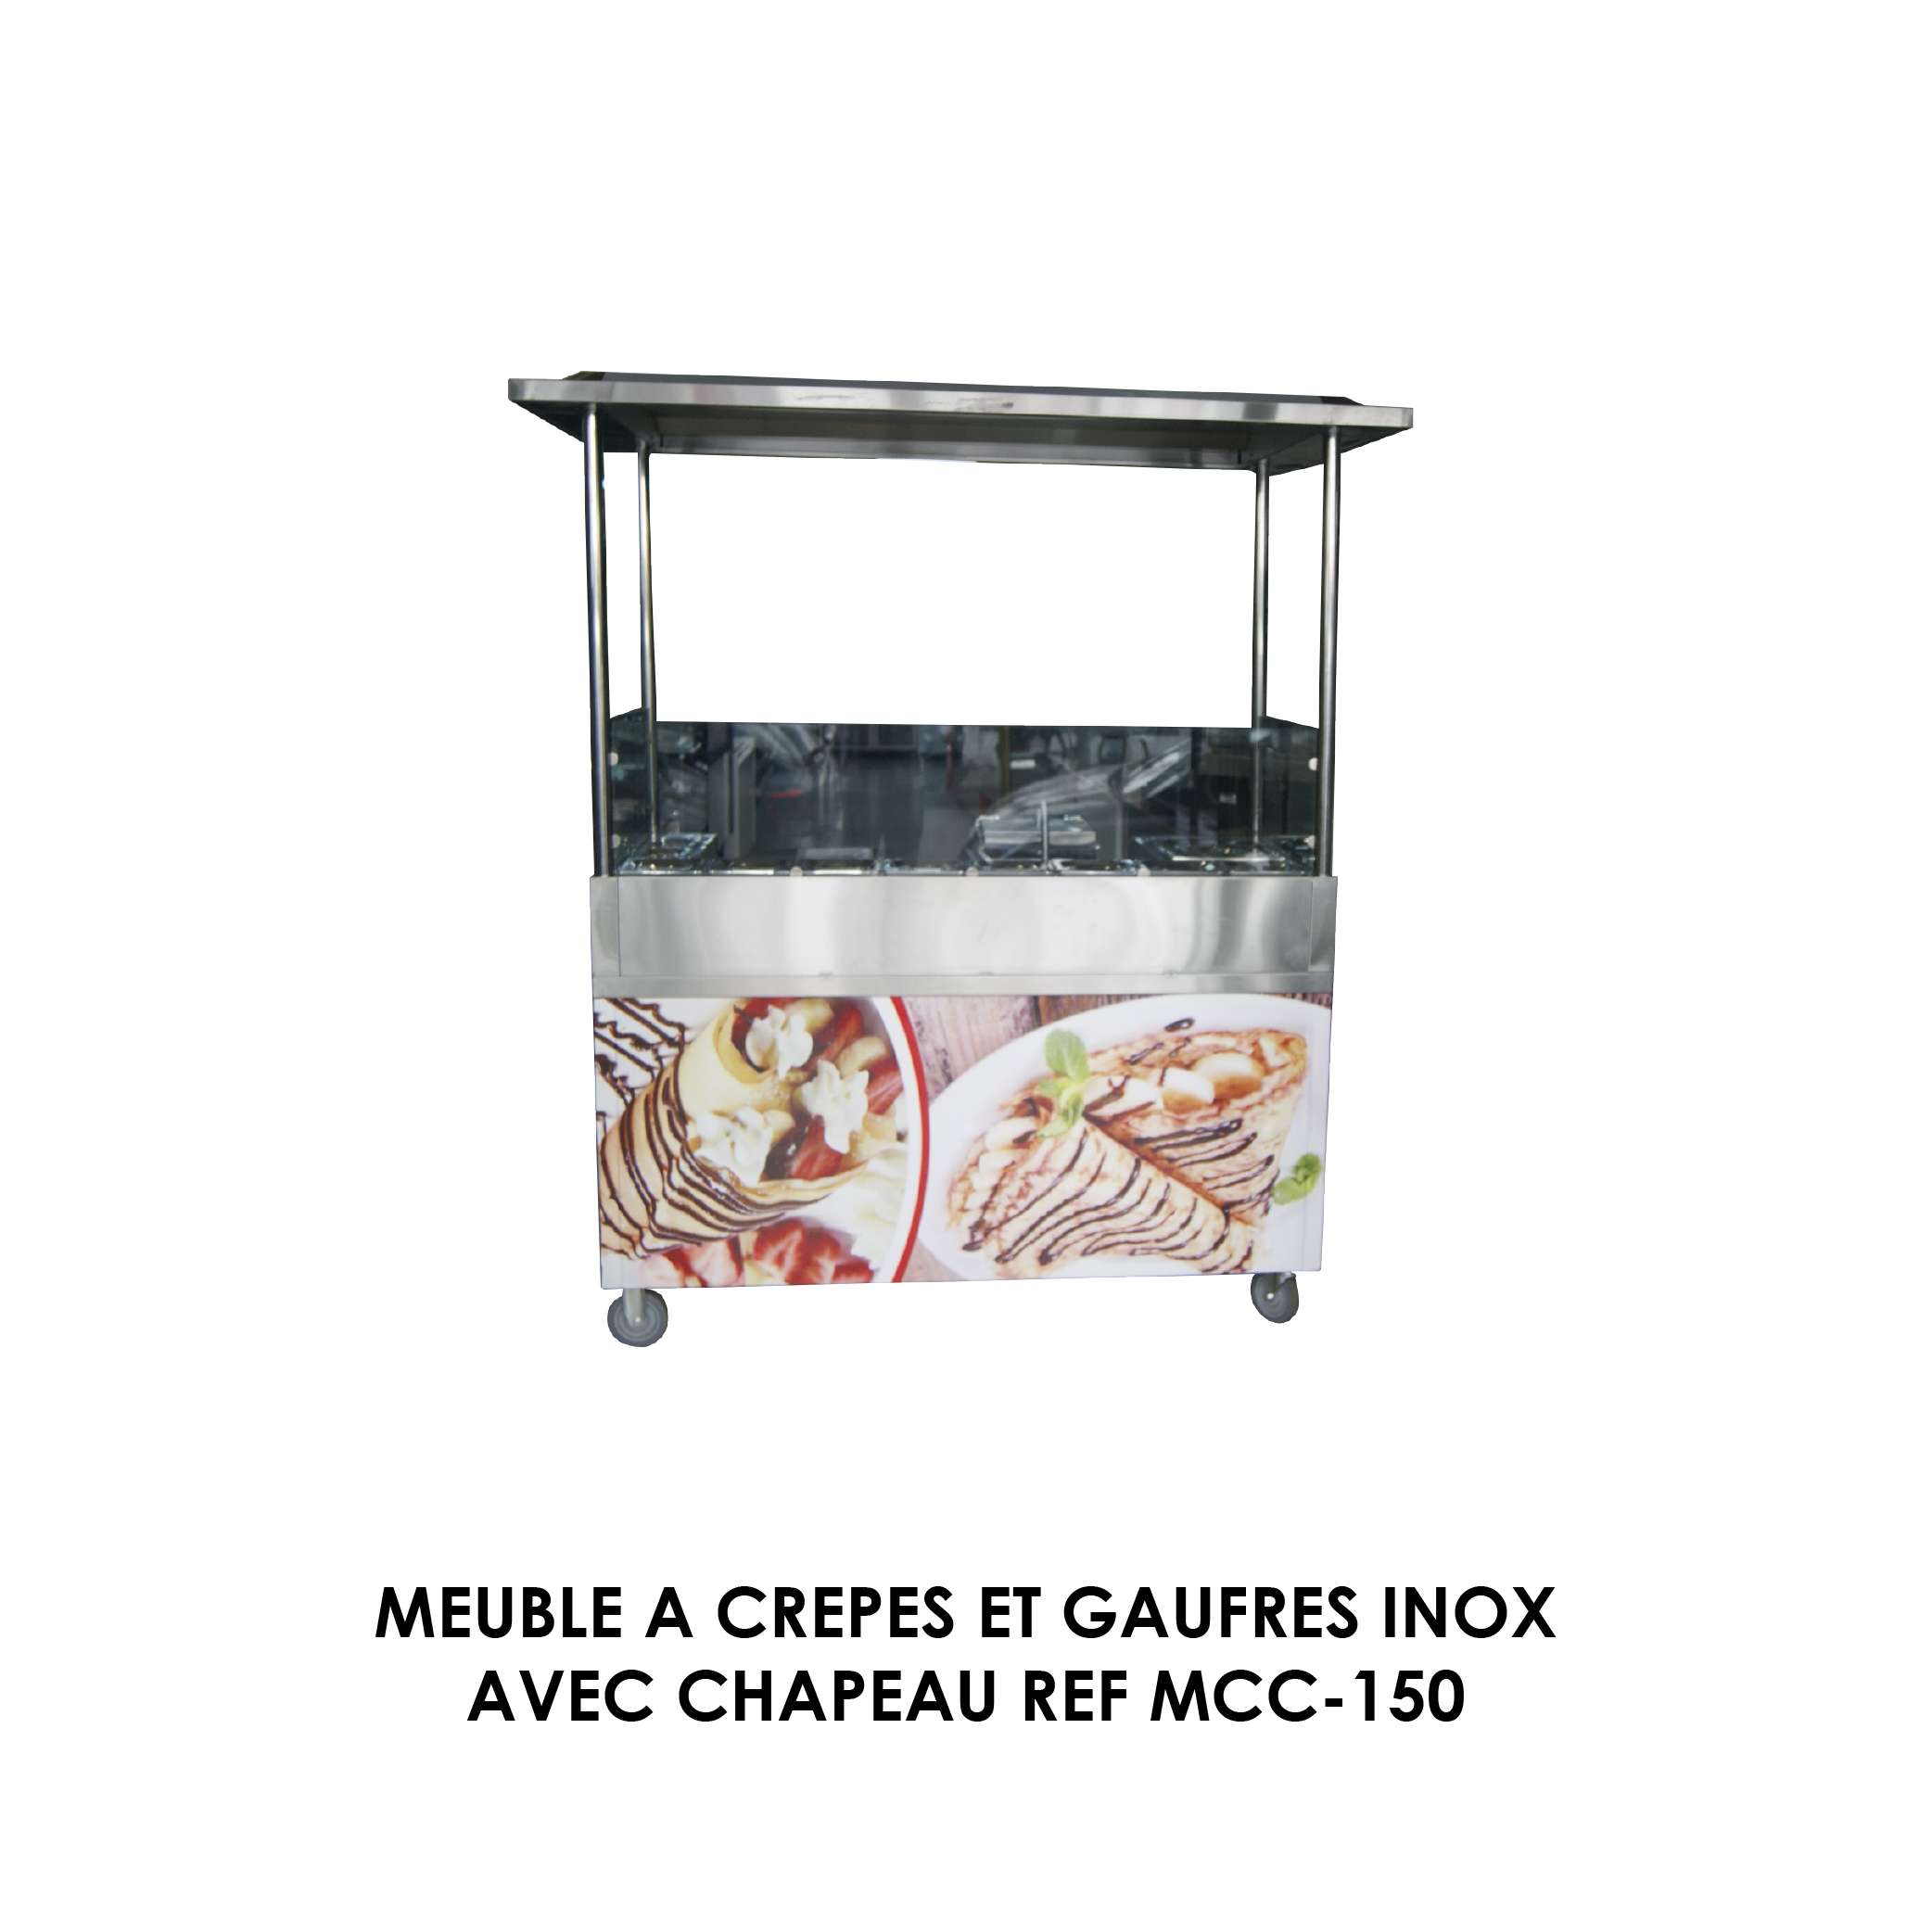 MEUBLE A CREPES ET GAUFRES INOX AVEC CHAPEAU REF MCC-150